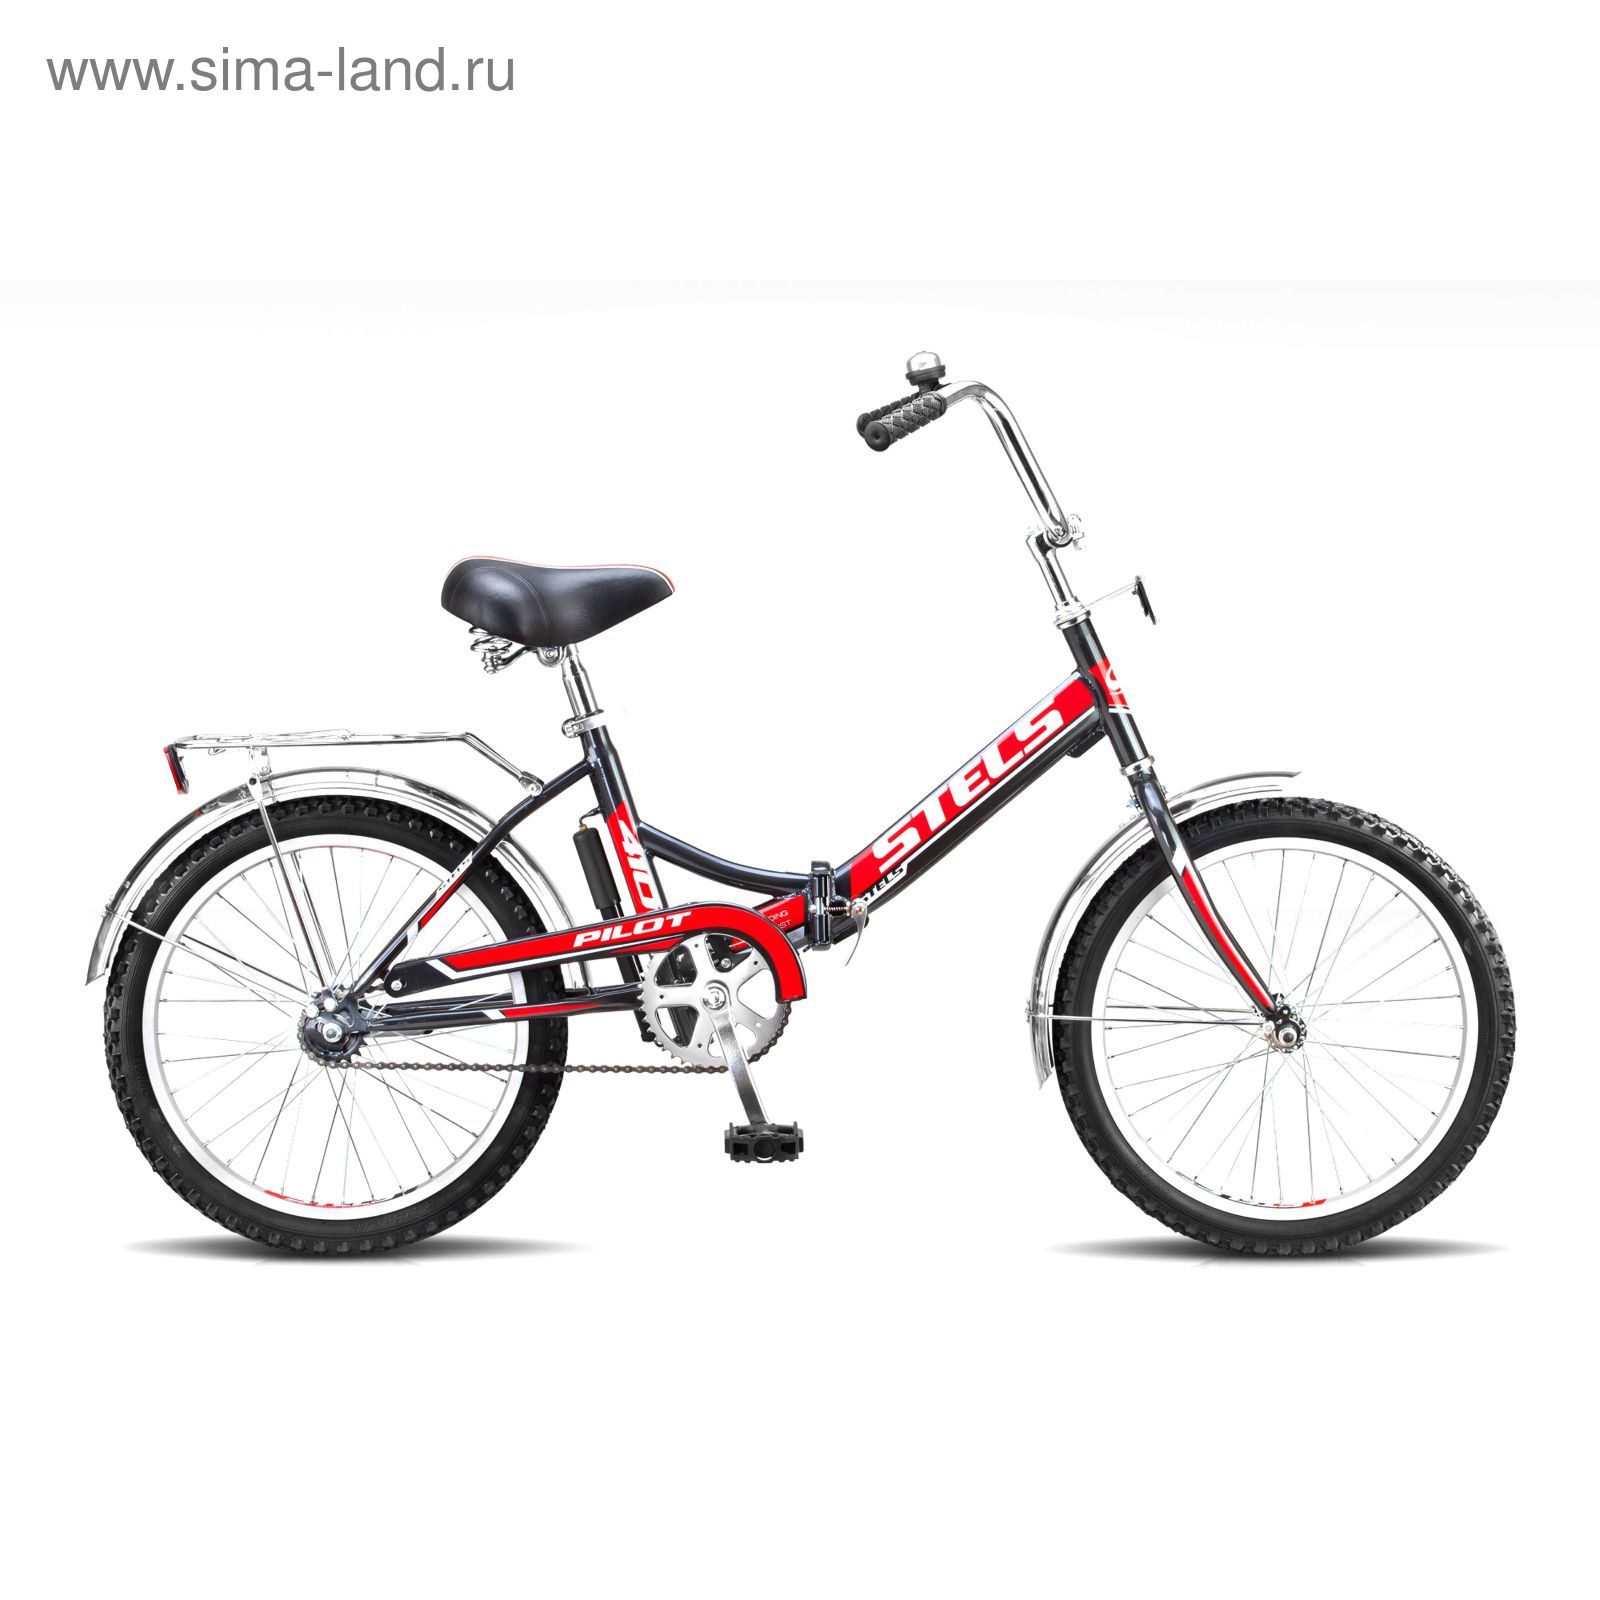 Велосипед 20" Stels Pilot-410, 2016, цвет чёрный/красный, размер 13,5"